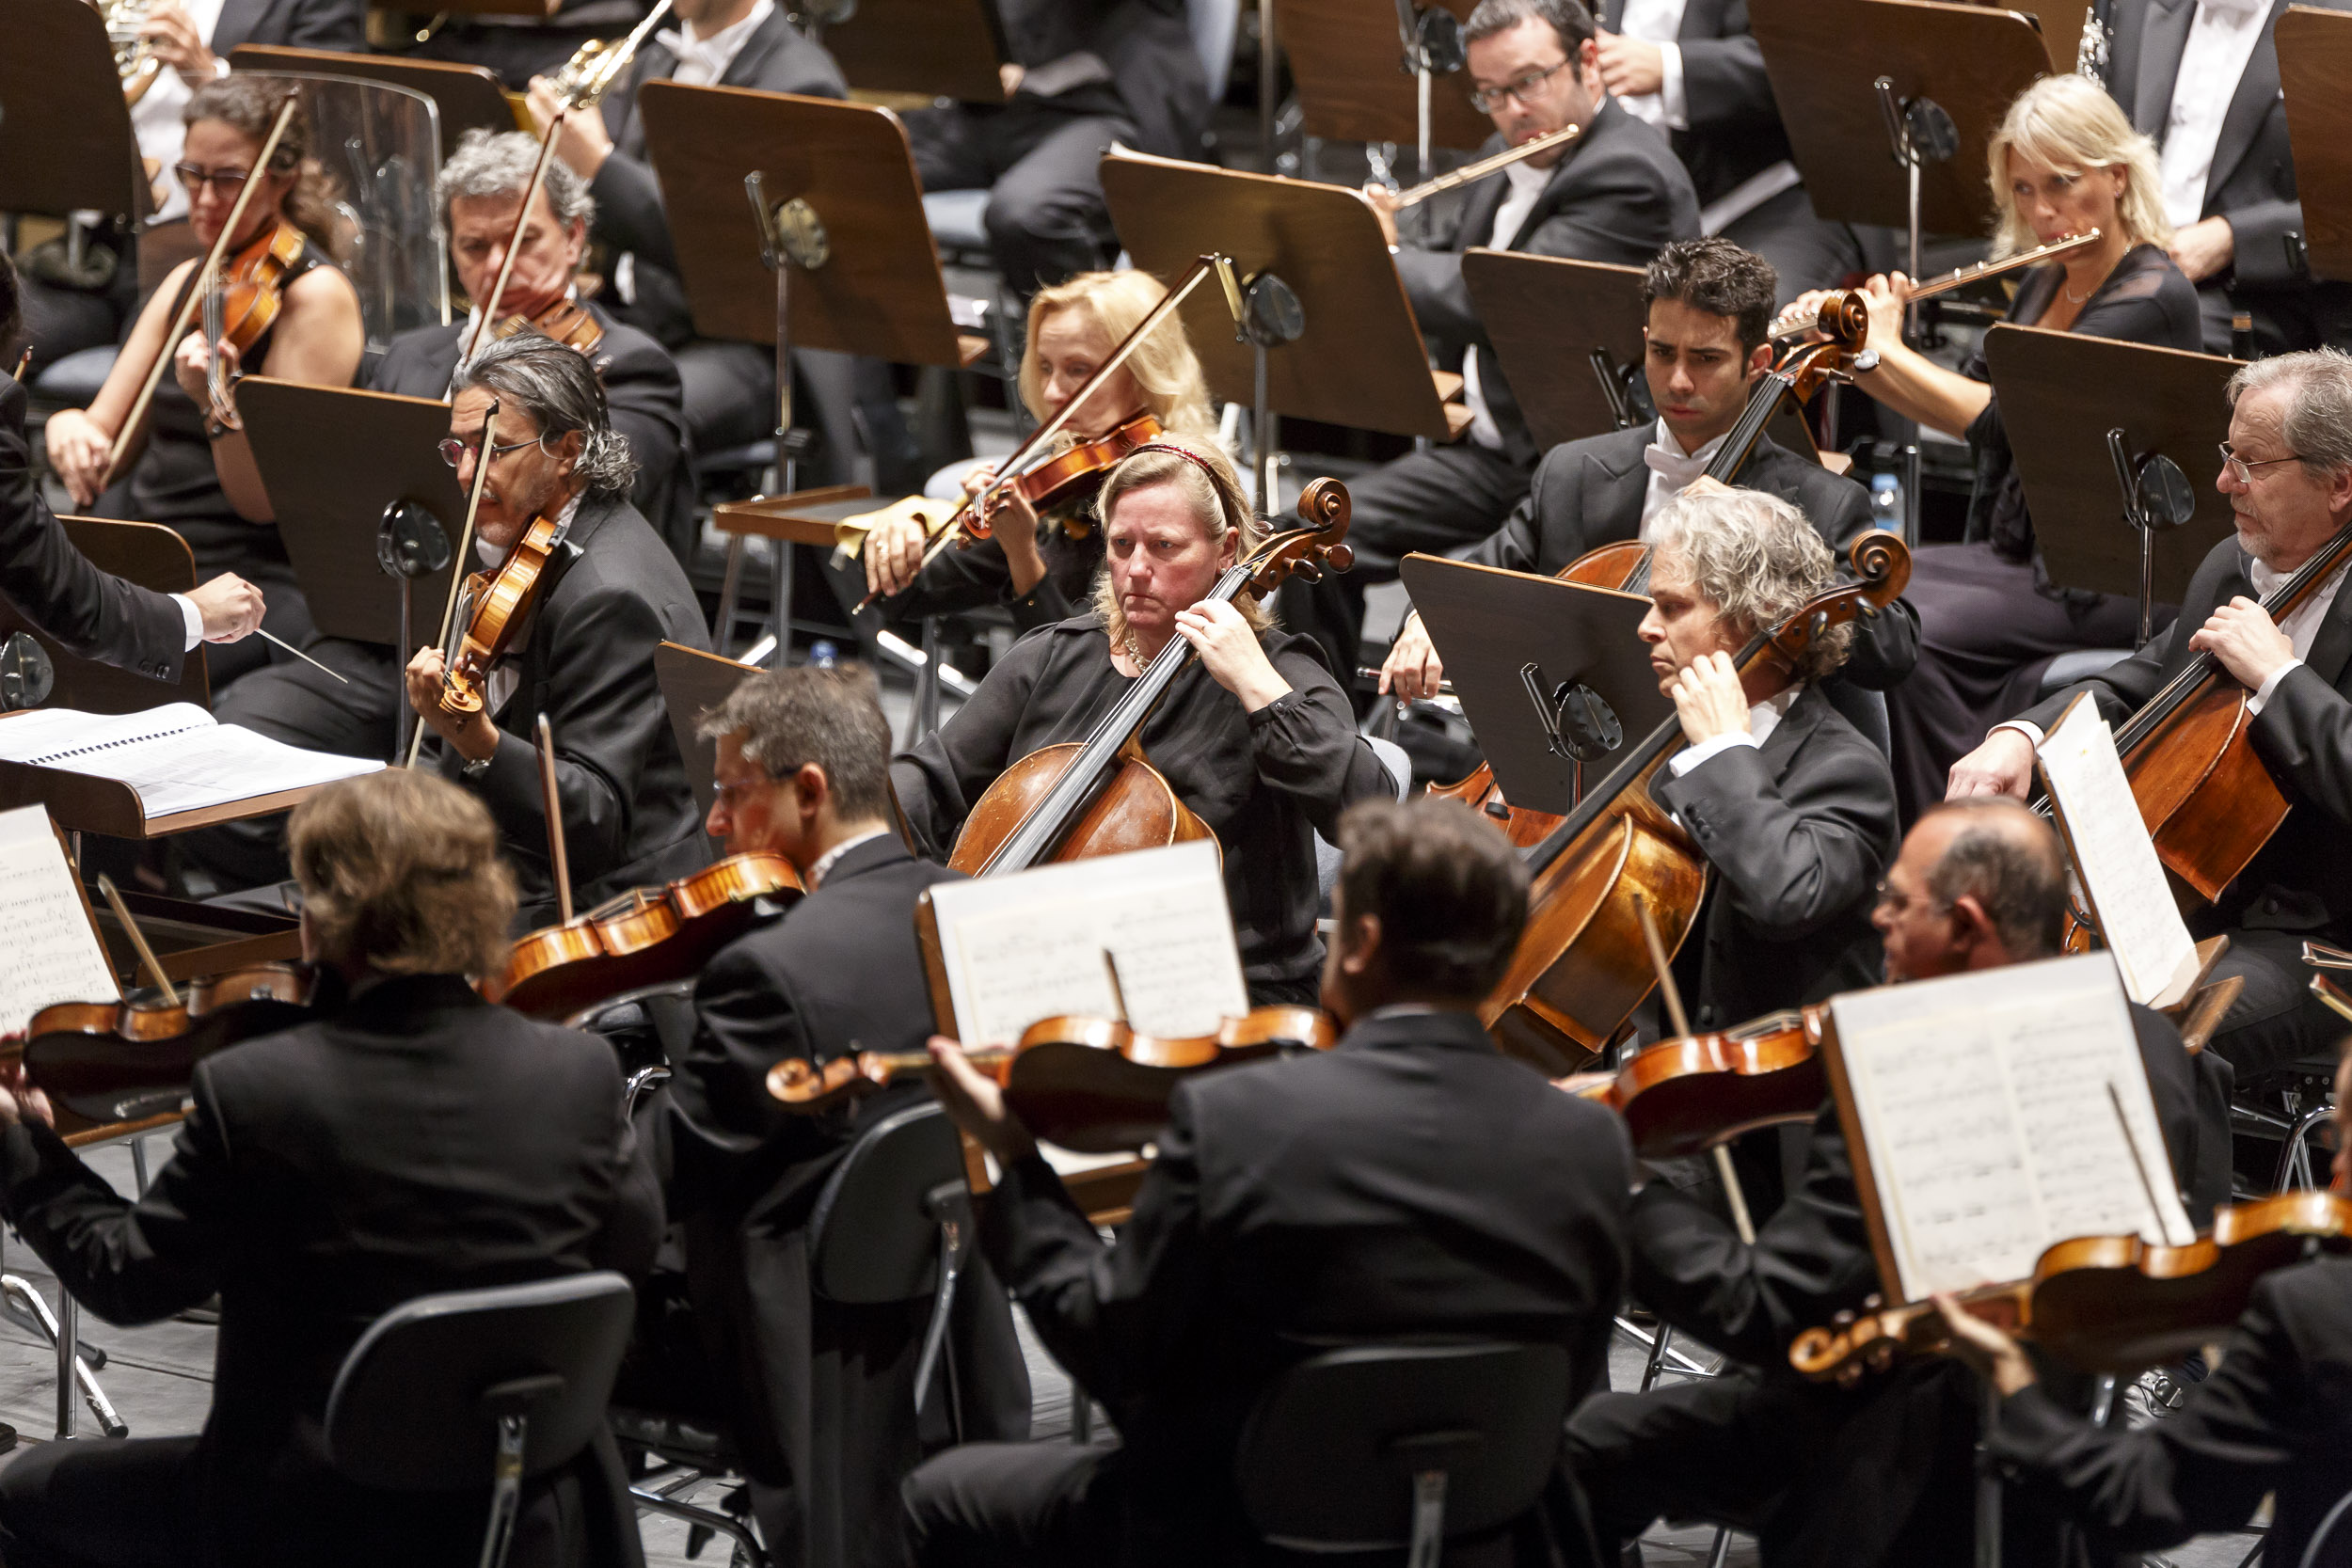 La Orquesta Sinfónica de Tenerife ofrece un concierto con obras de Richard Strauss, Wagner y Korngold